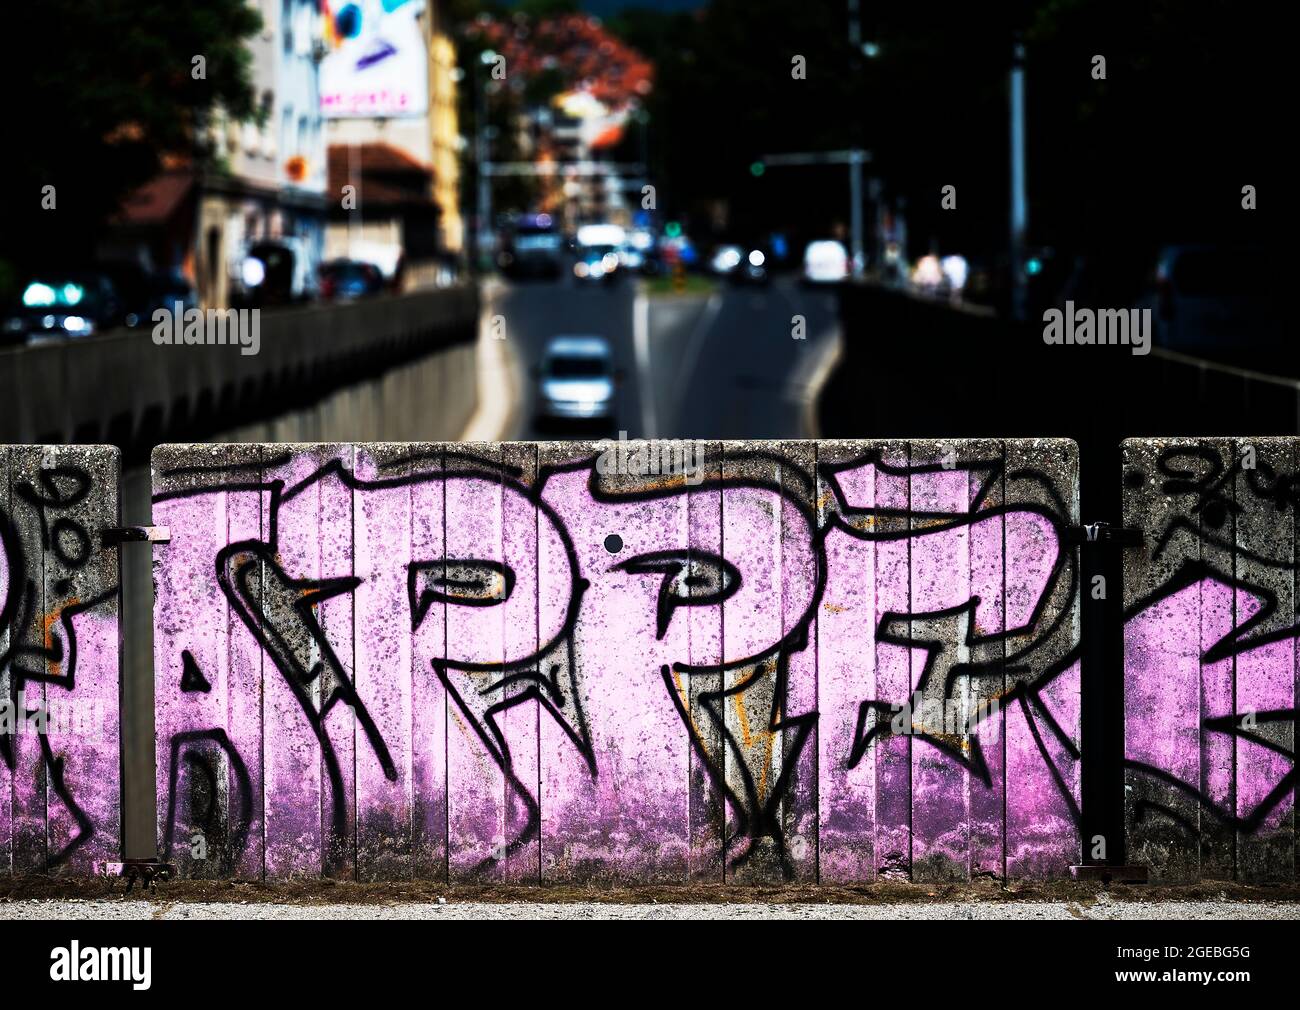 Immagine ad alto contrasto di strade trafficate della città con graffiti in primo piano, Zagabria, Croazia Foto Stock